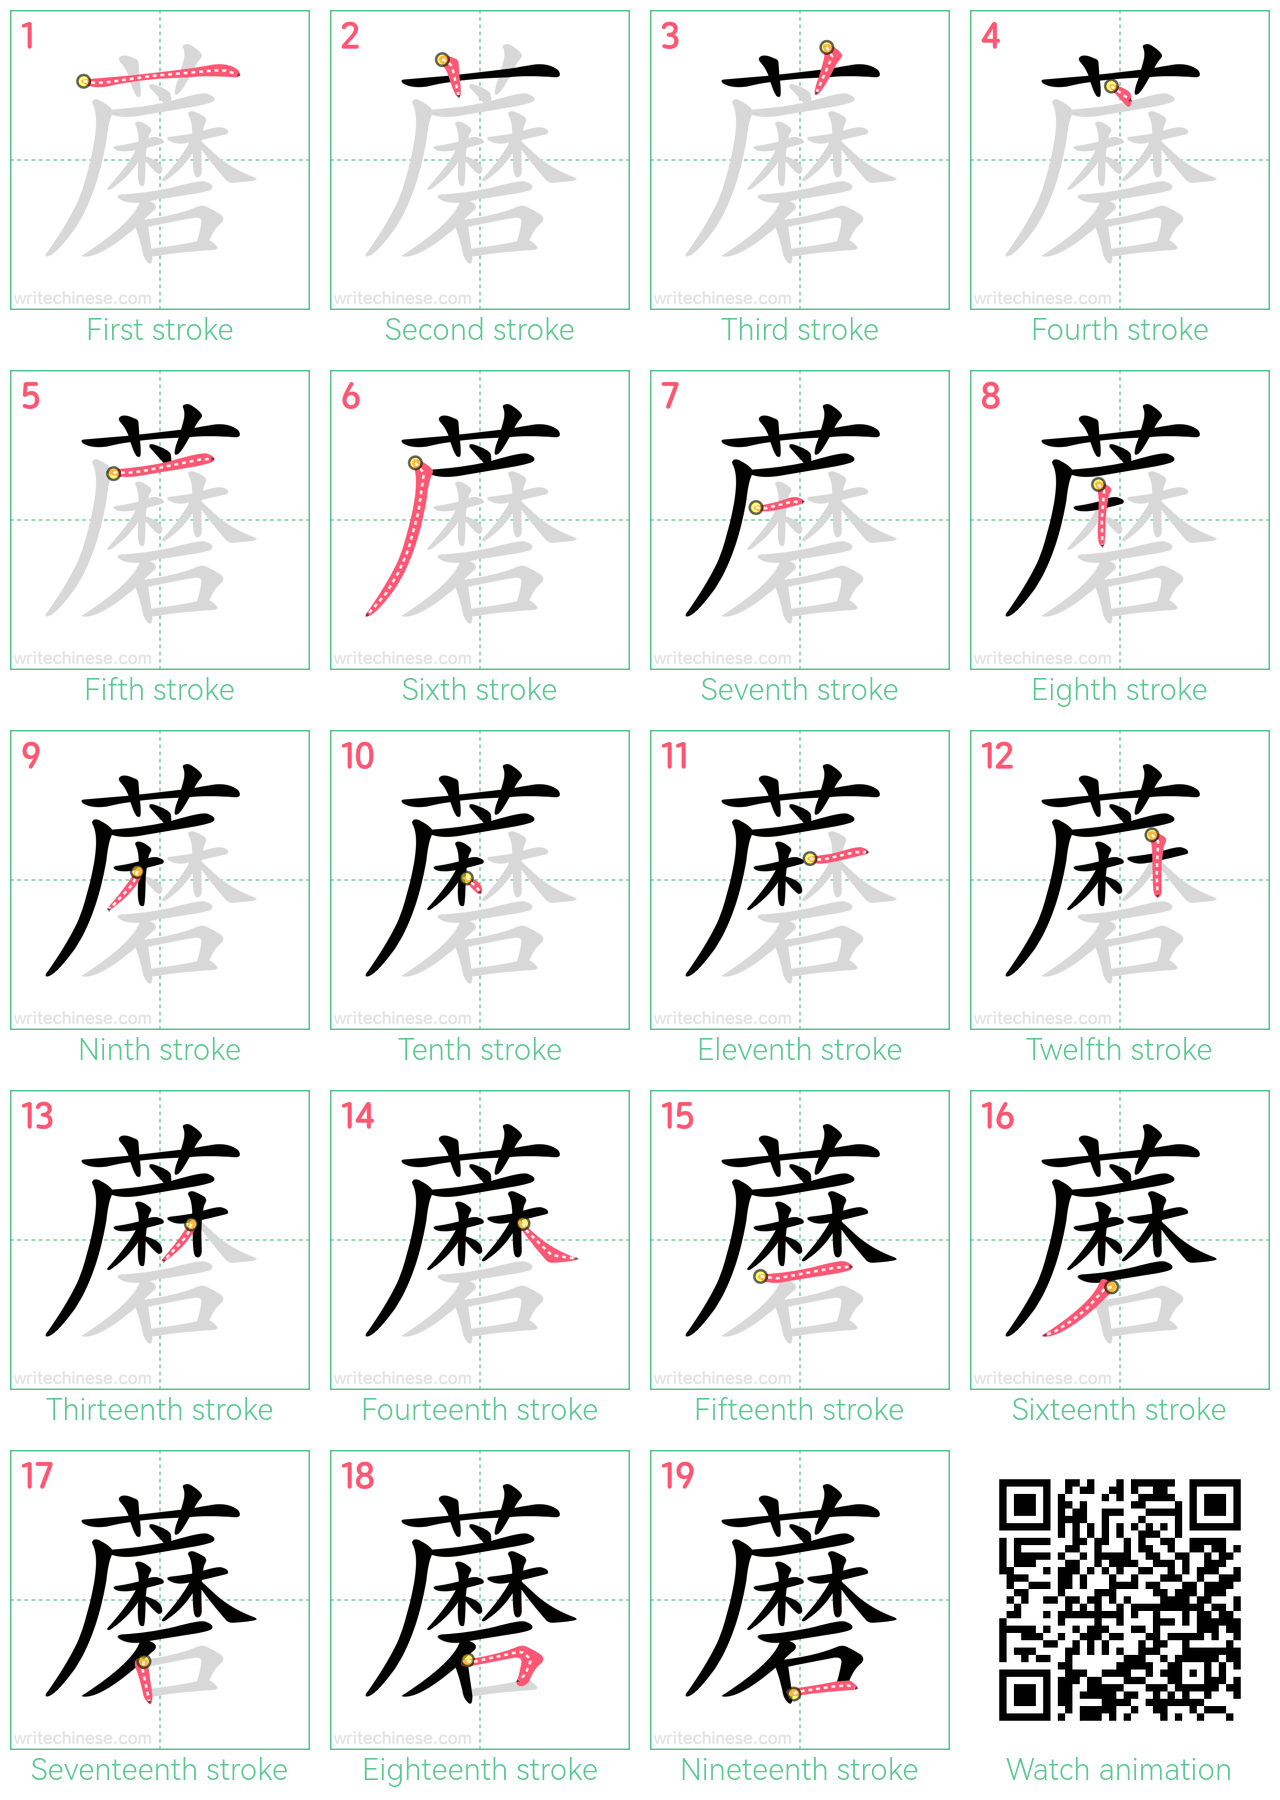 蘑 step-by-step stroke order diagrams